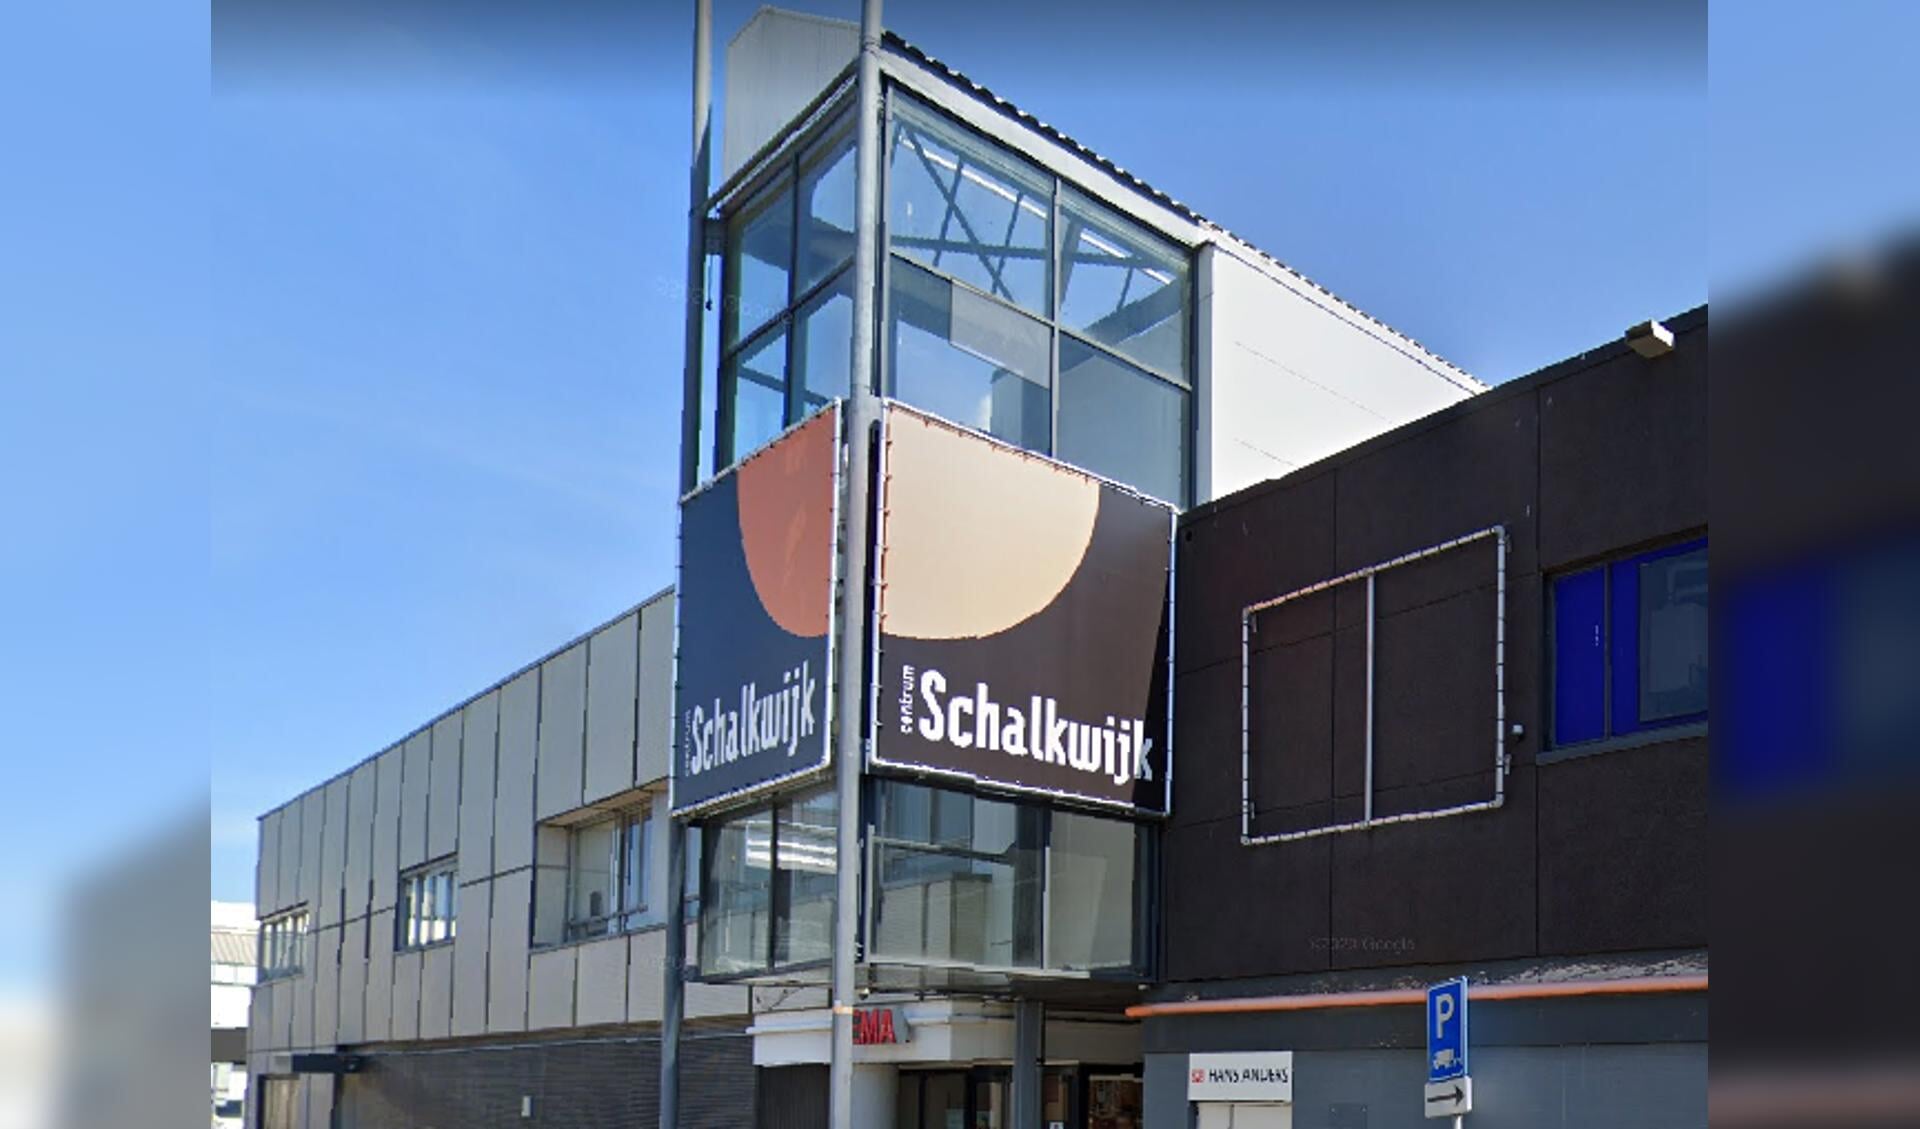 Centrum Schalkwijk gespaard bij rellen Haarlem: ‘Maar ik keur dit echt af’